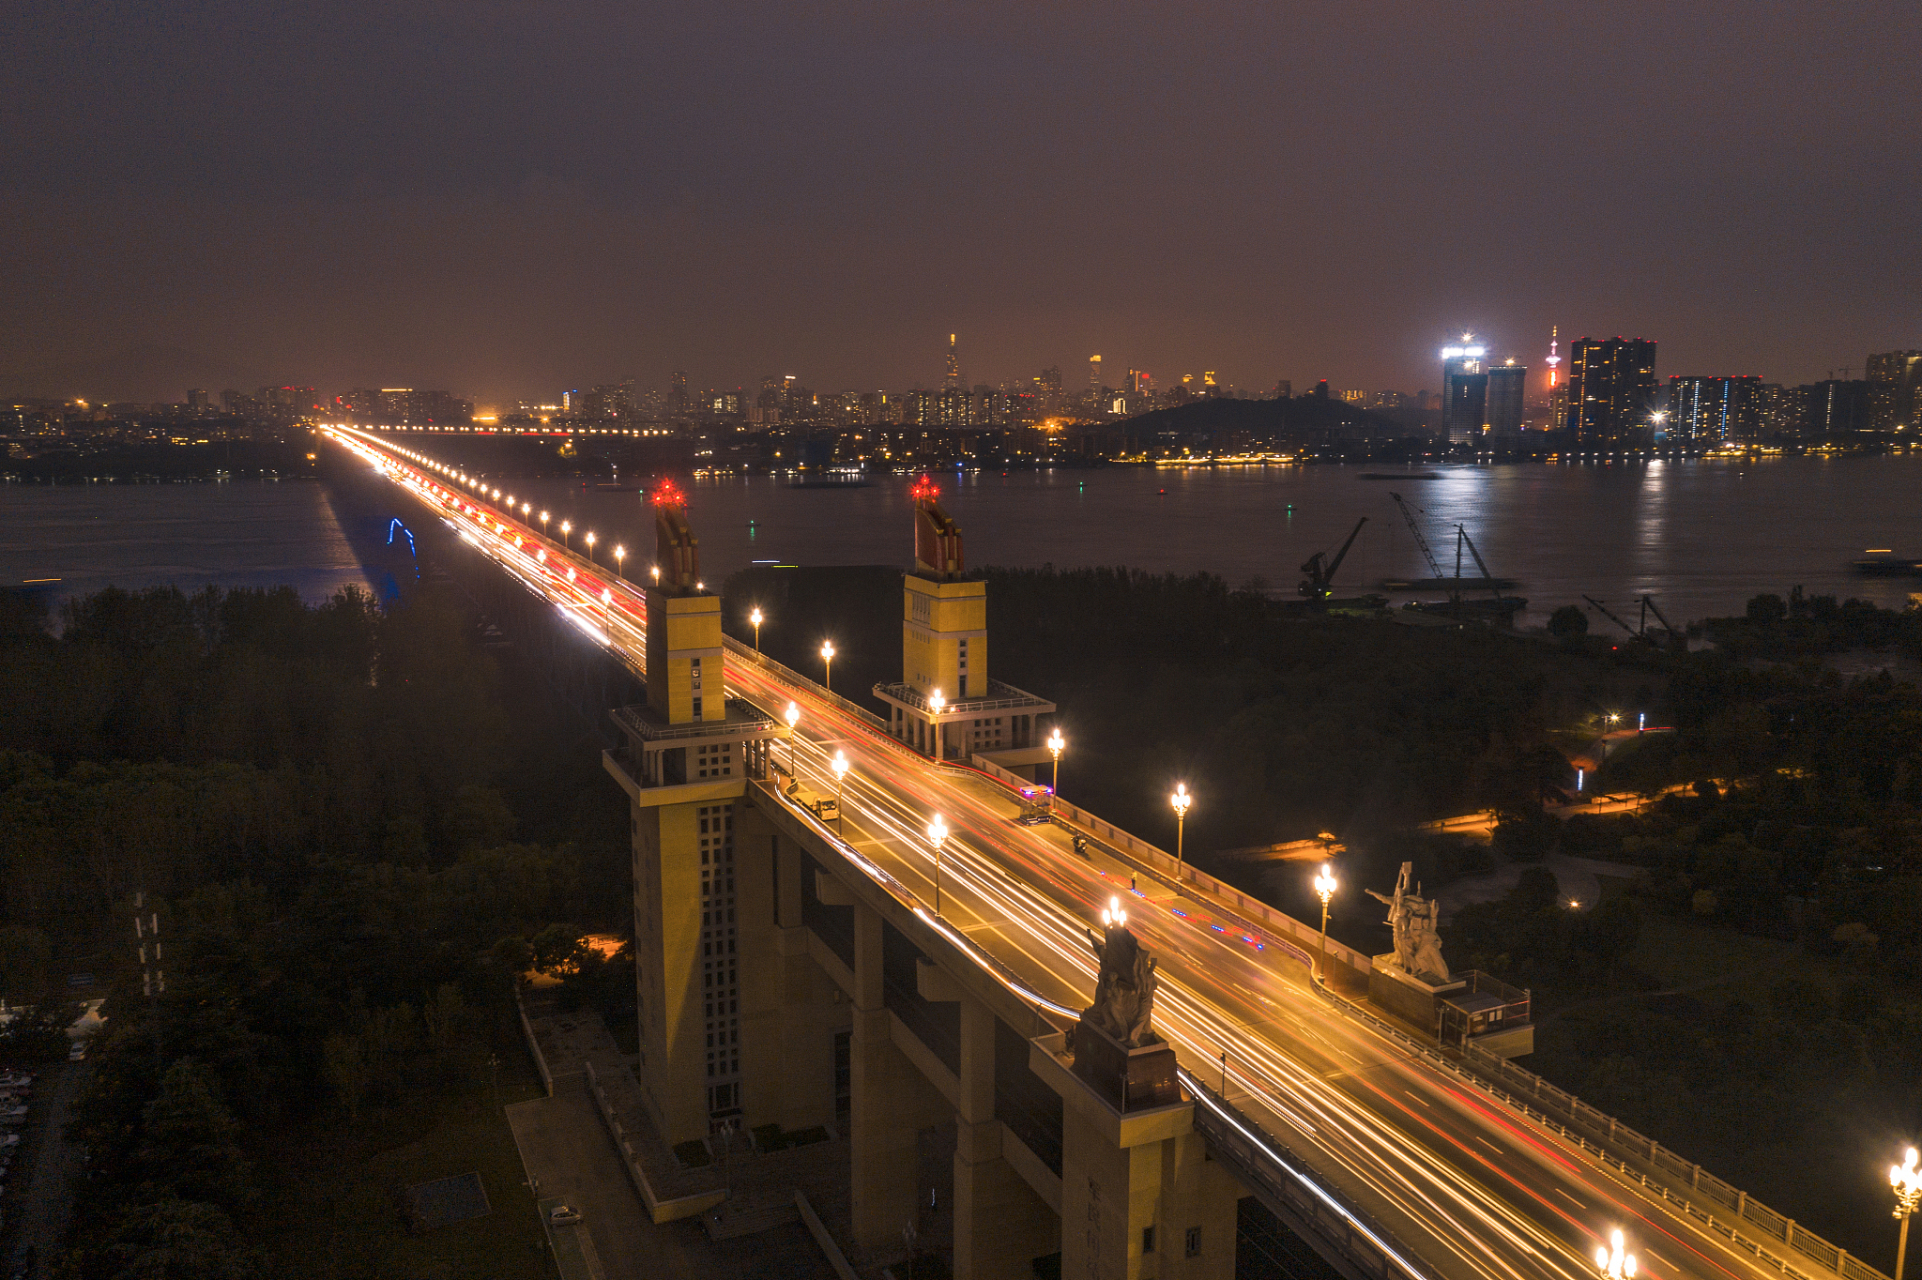 夜幕下的江苏南京长江大桥,璀璨都市之光,简直美得让人心醉!